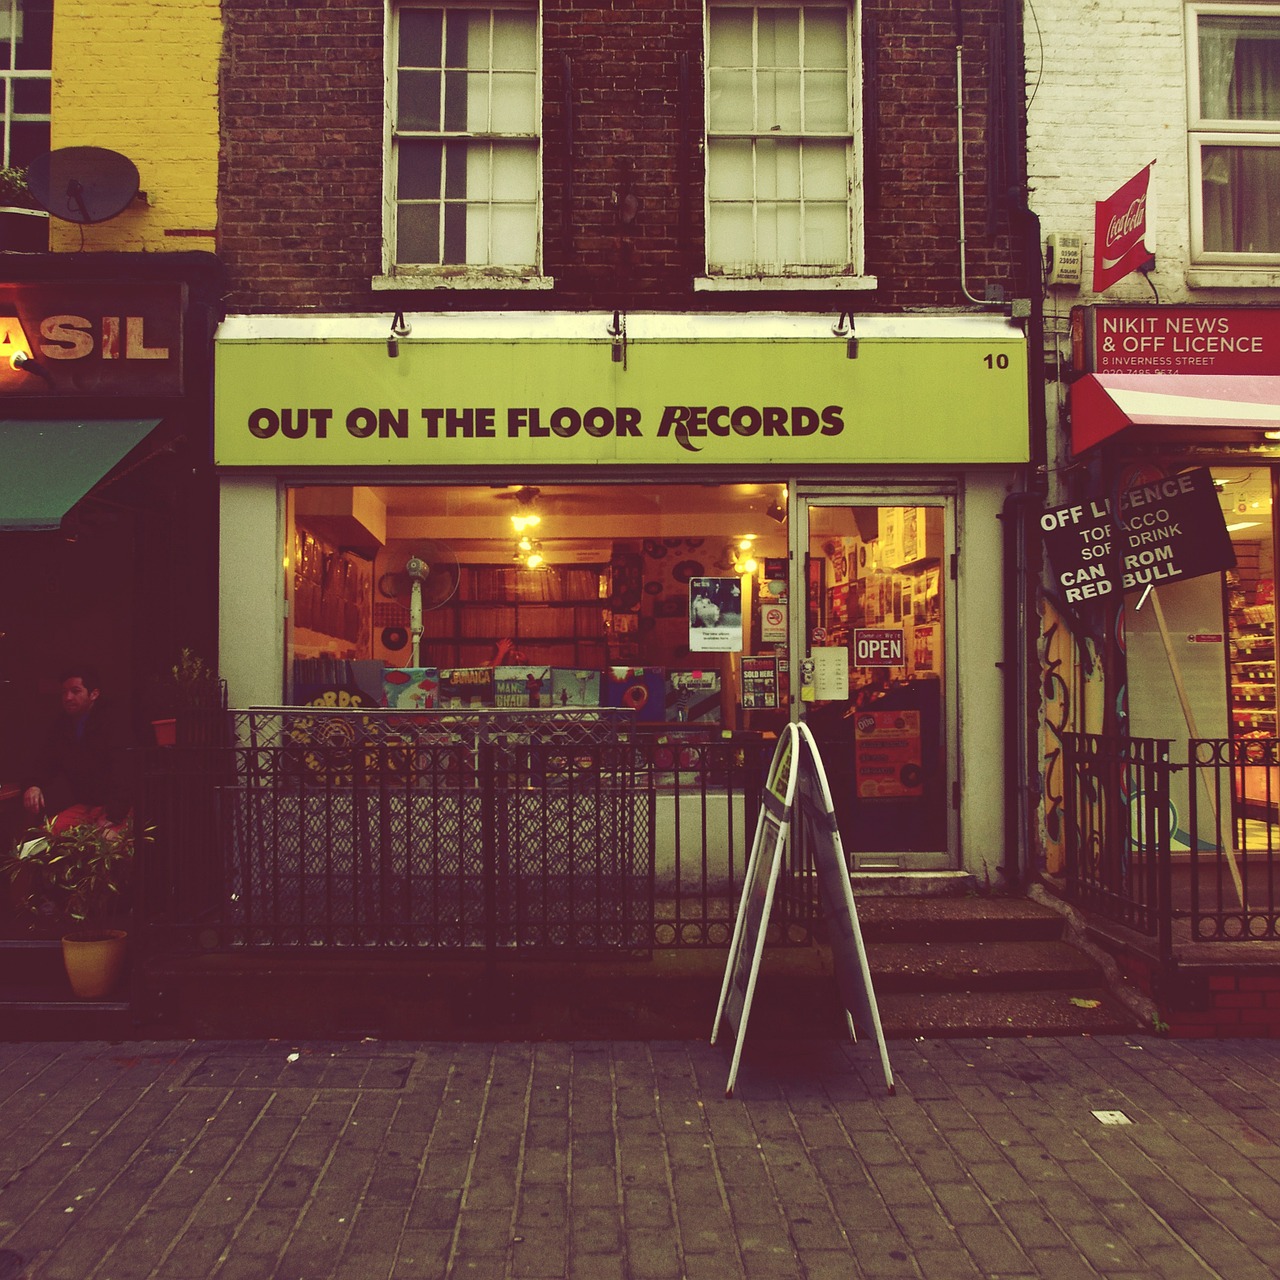 Parduotuvė, Įrašai, Vintage, Grunge, Miesto, Gatvė, Londonas, Anglija, Įrašyti, Muzika